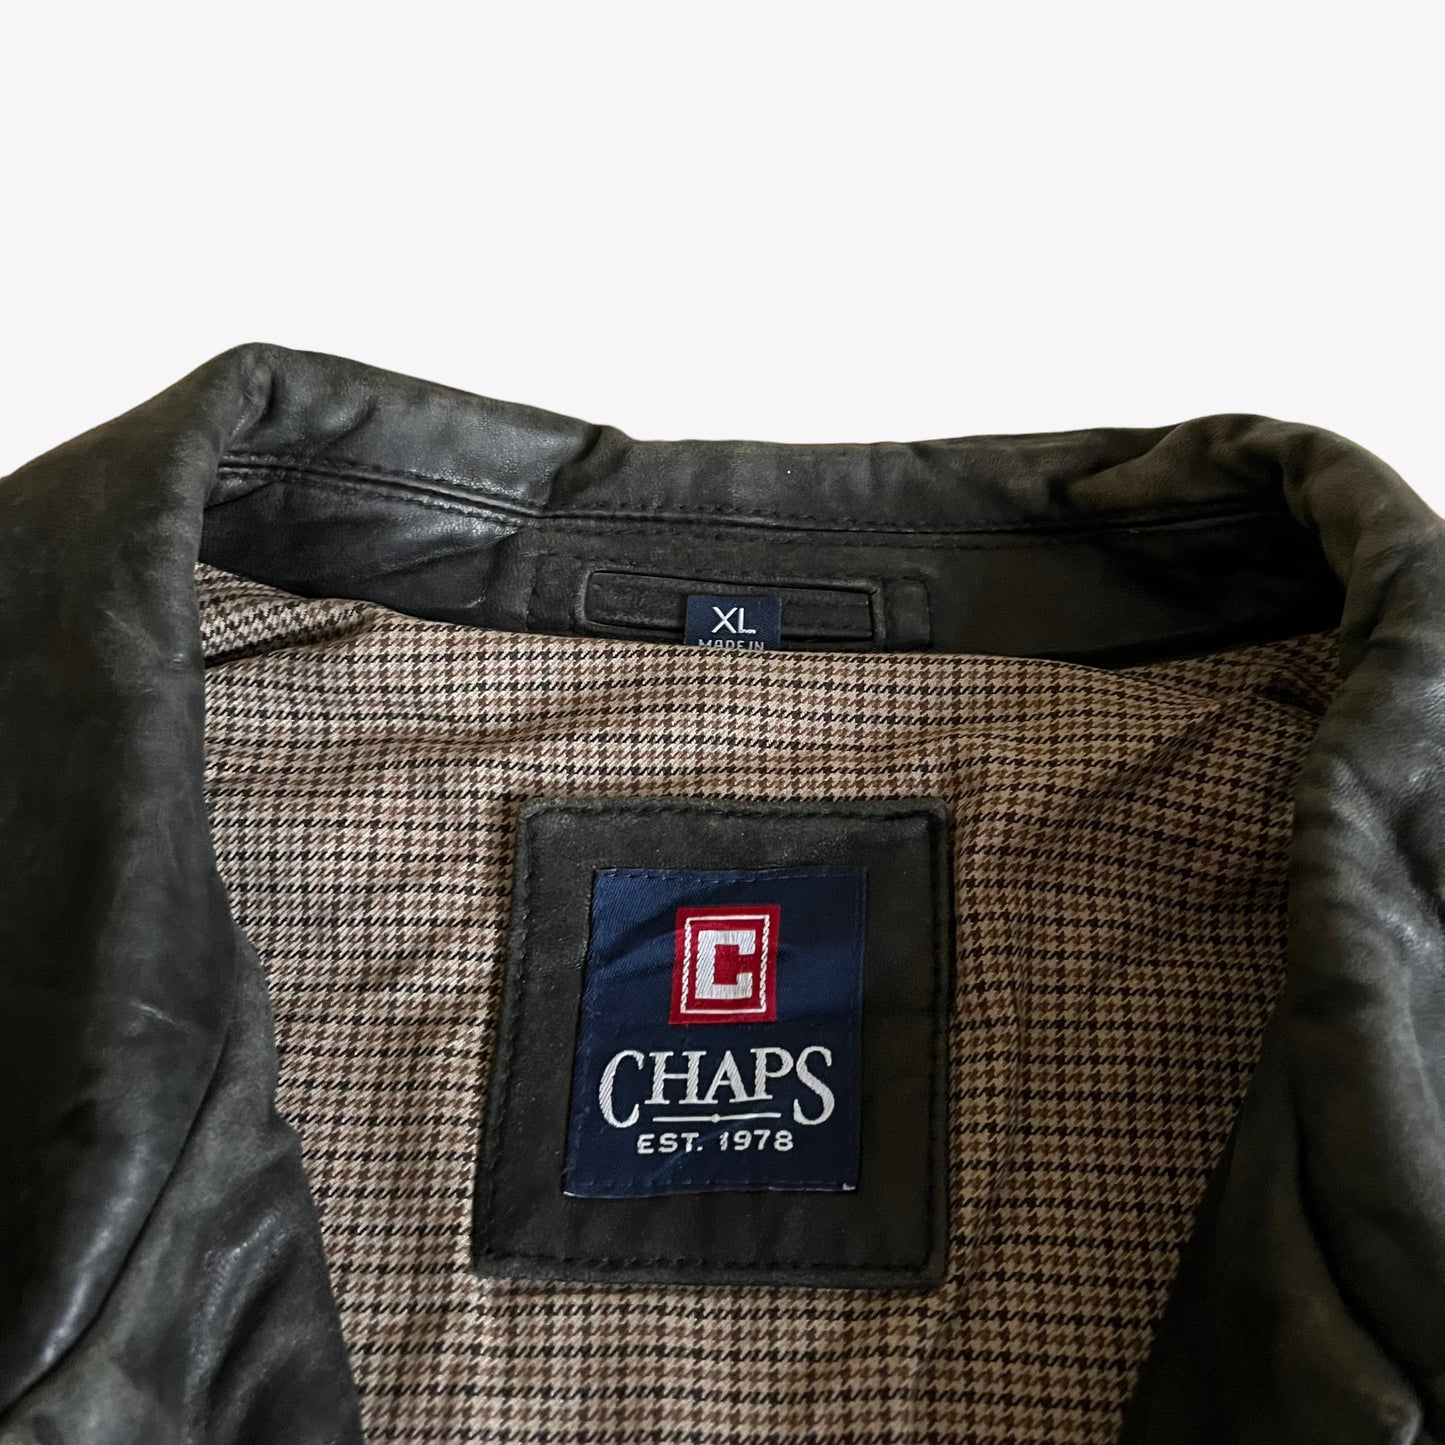 Vintage 90s Chaps Black Leather Driving Jacket Label - Casspios Dream